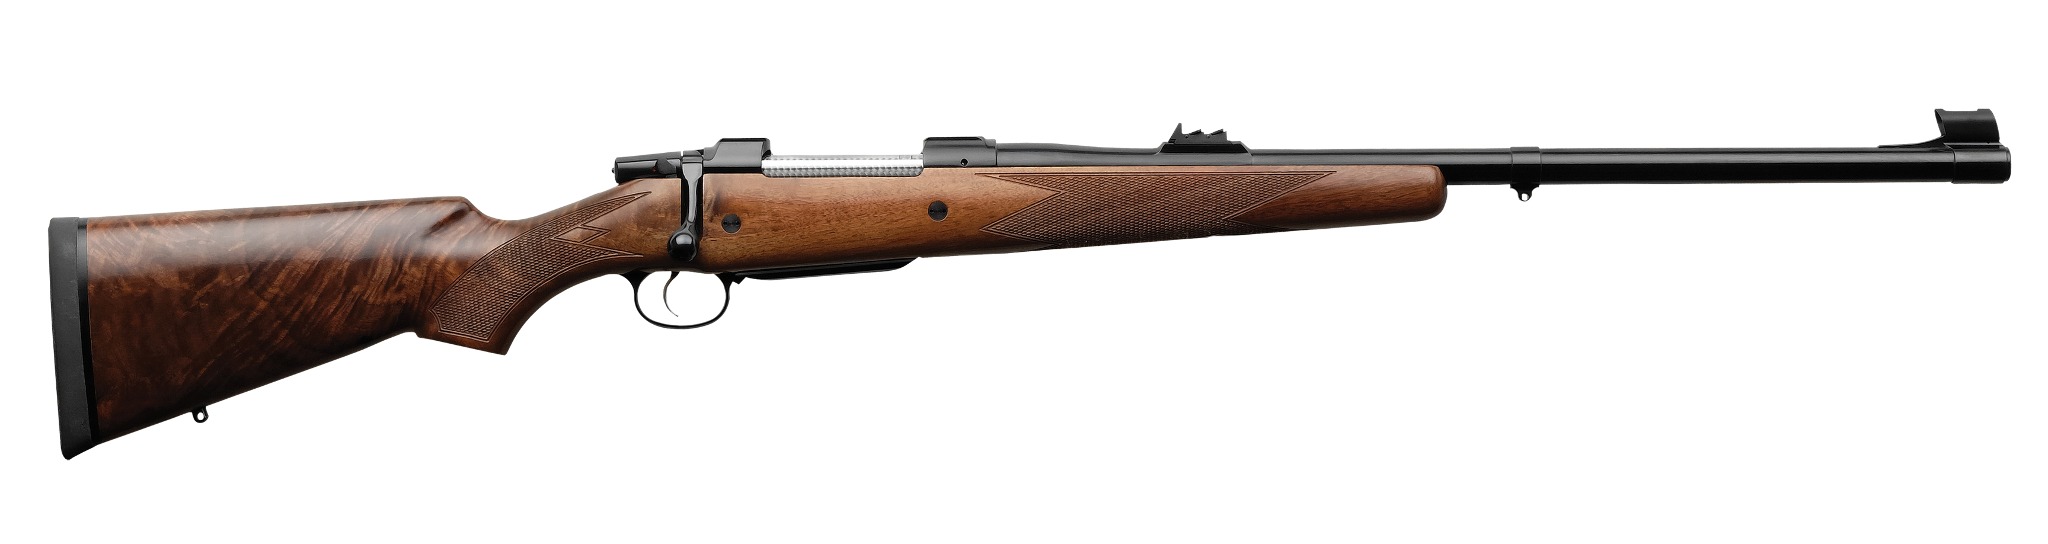 CZ Magnum Express rifle